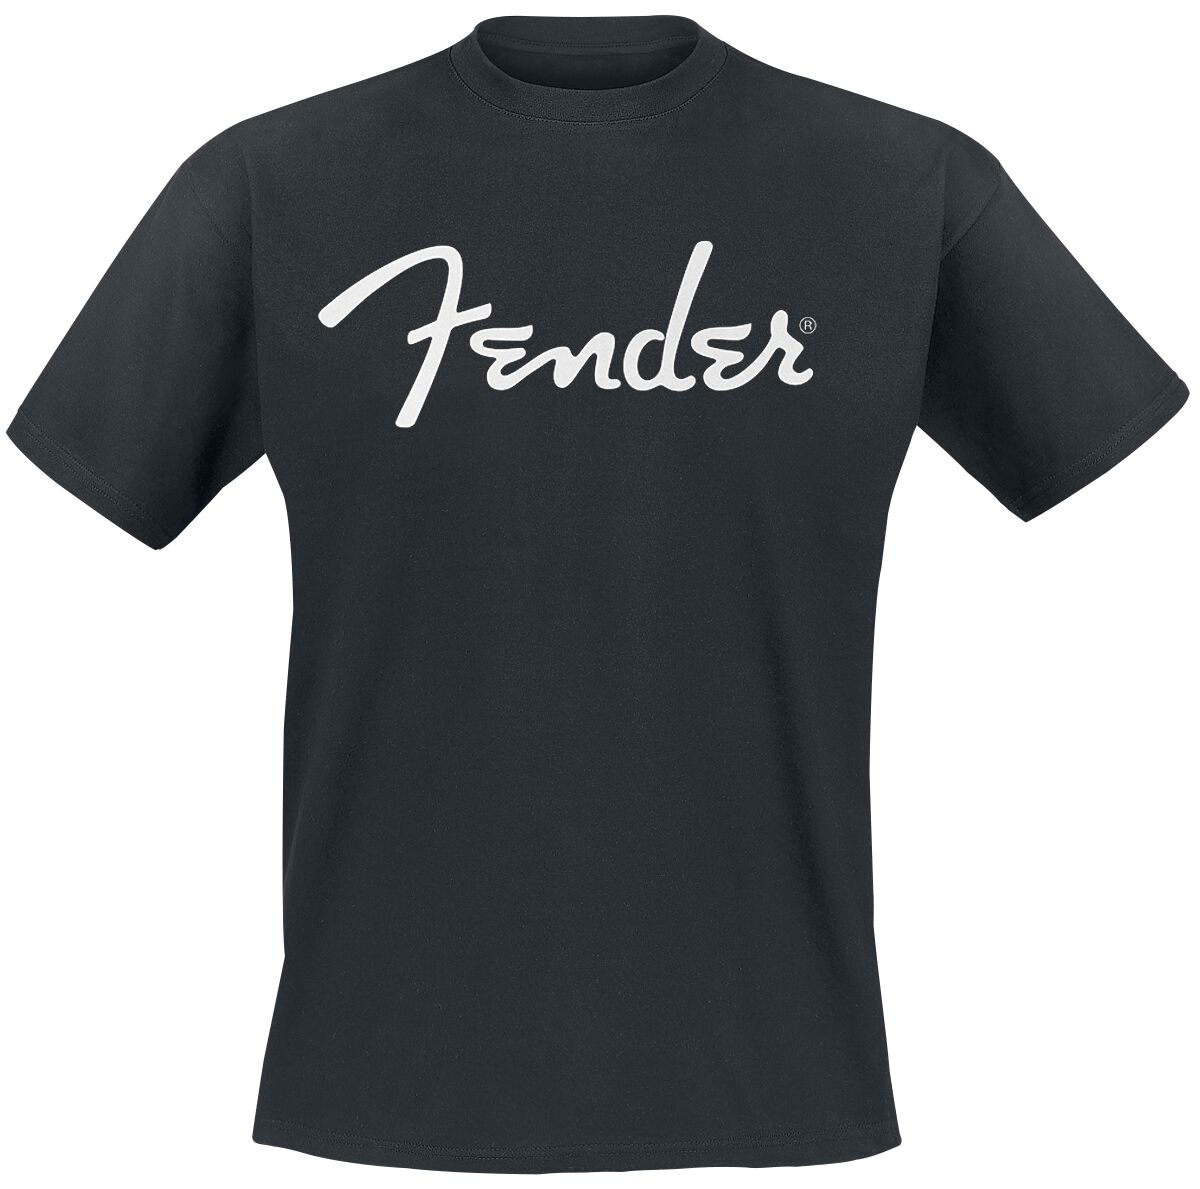 Fender Classic Logo Lizenziert T-shirt Herren